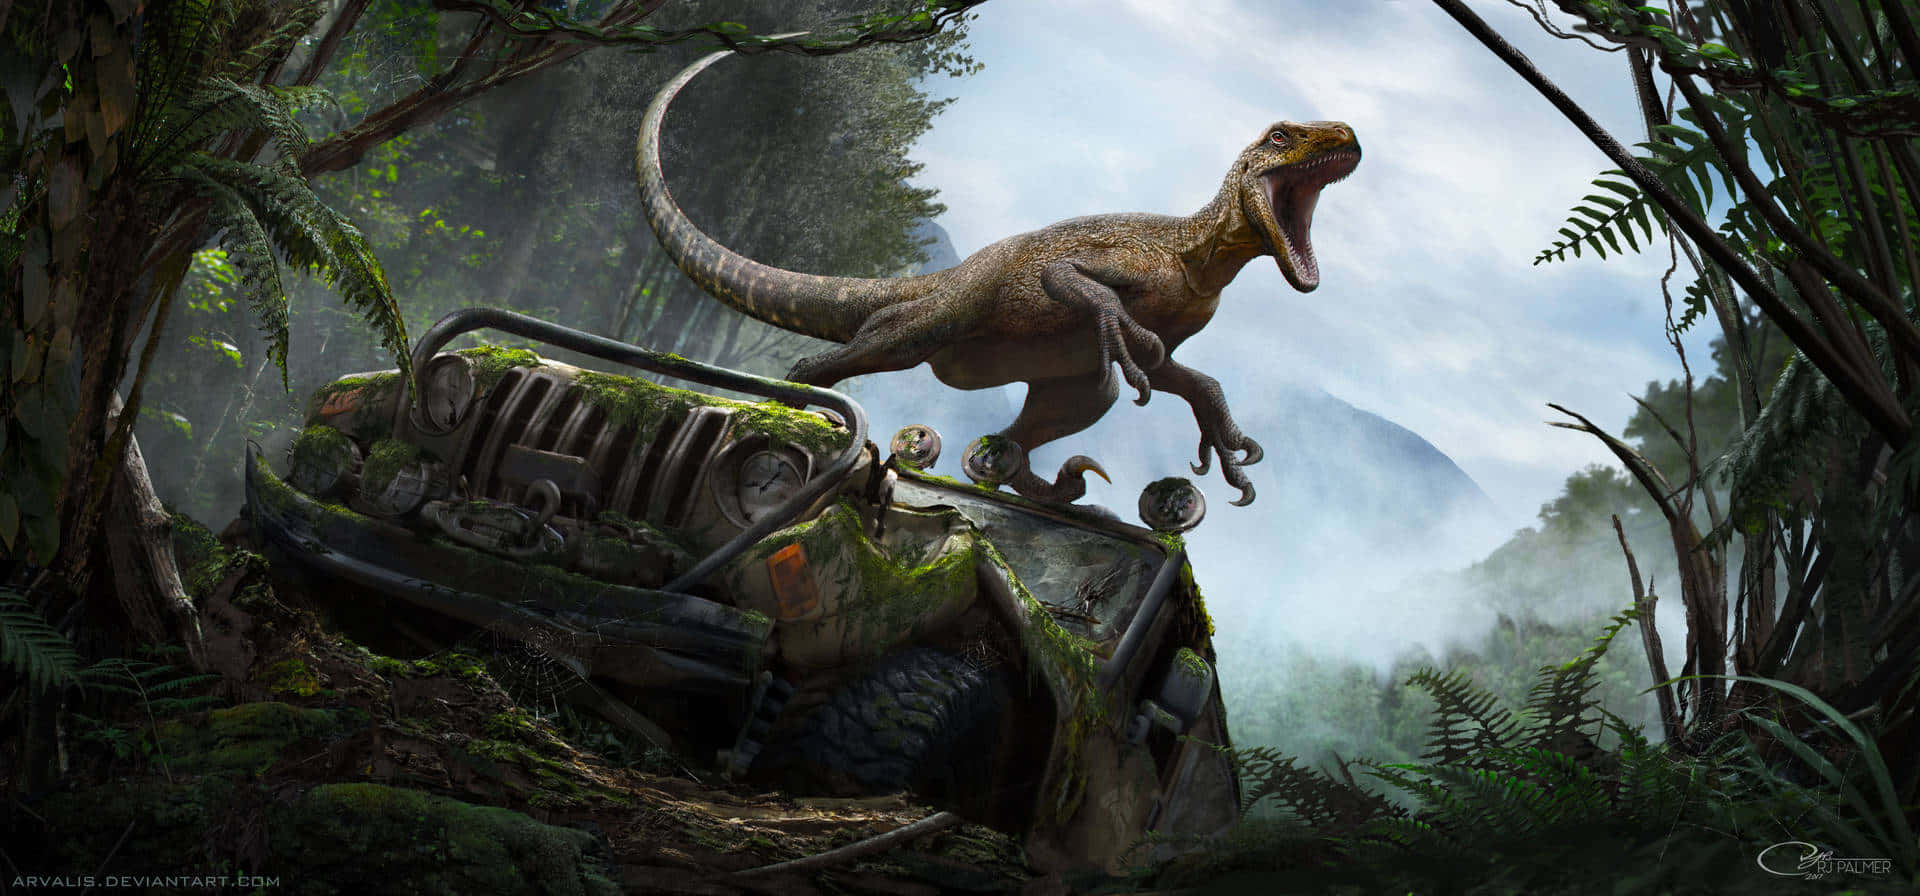 Unastatua Realistica Di Dinosauro In Mezzo A Una Vegetazione Tropicale. Sfondo